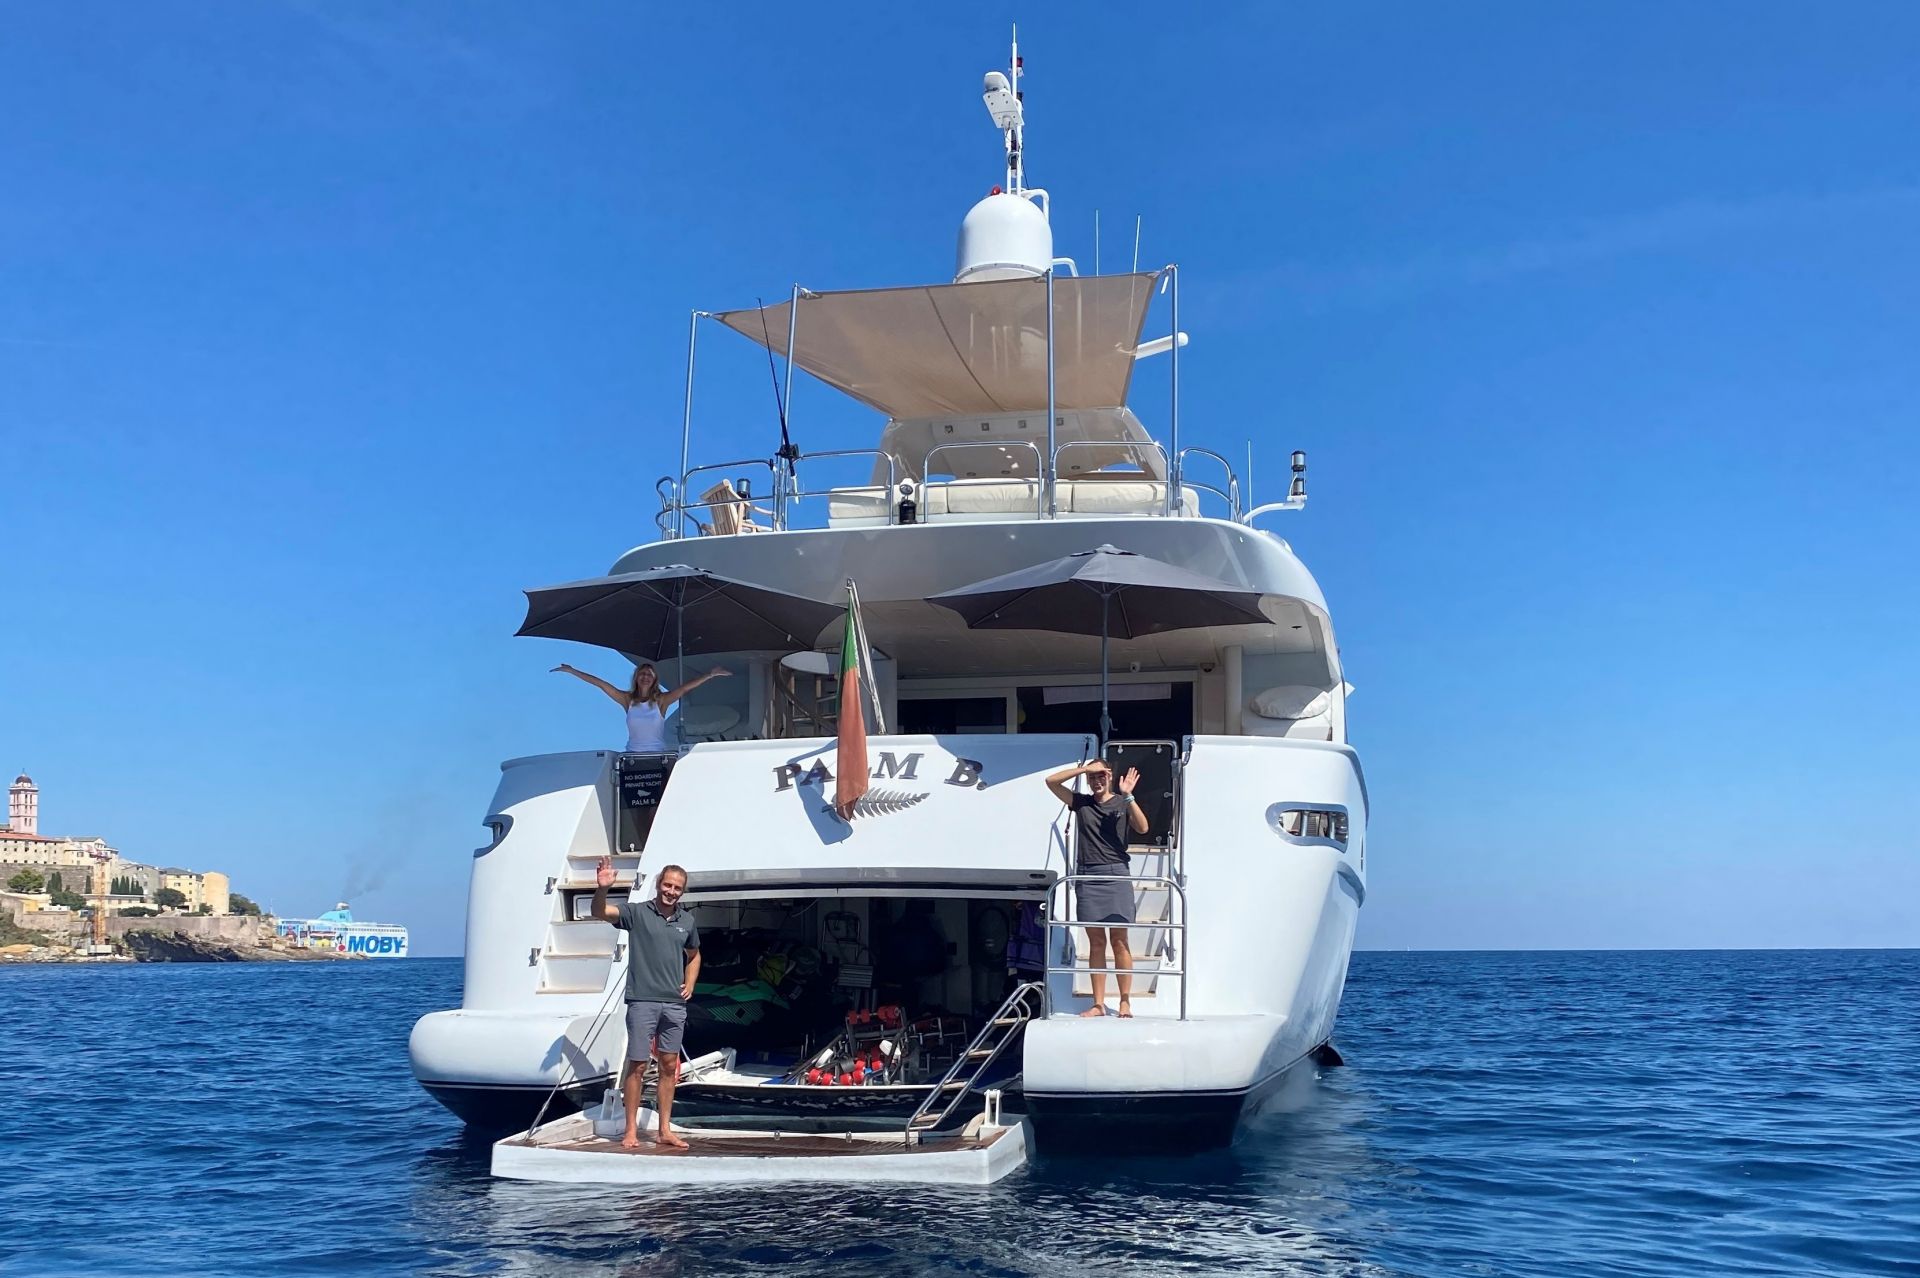 m/y palm b yacht for sale bottom deck